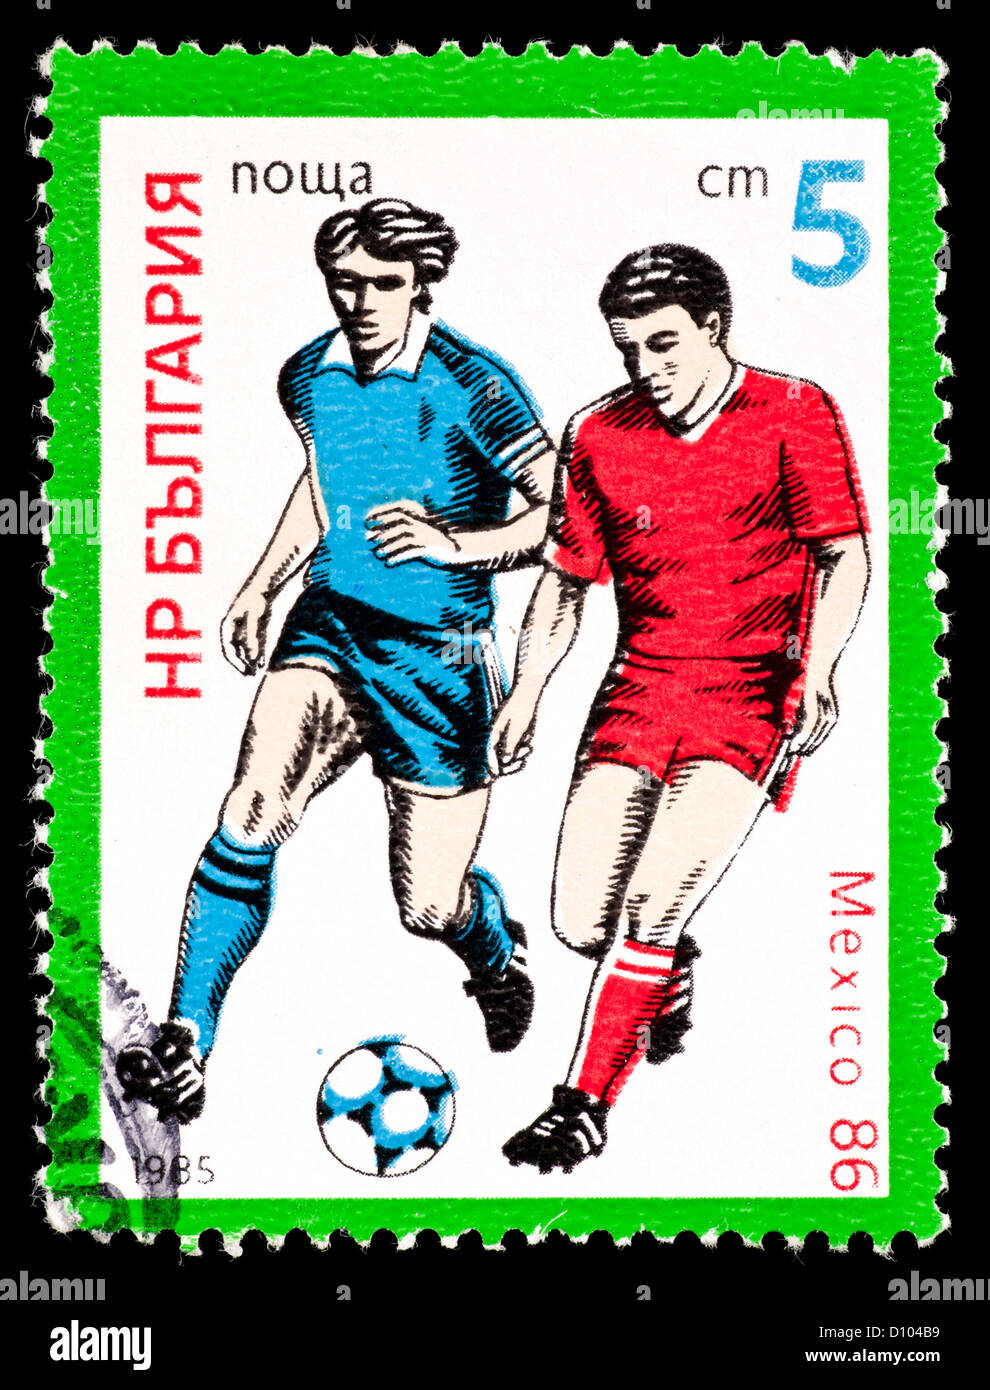 Timbre-poste de la Bulgarie représentant deux joueurs de football, émis pour la Coupe du Monde de soccer 1986 à Mexico. Banque D'Images